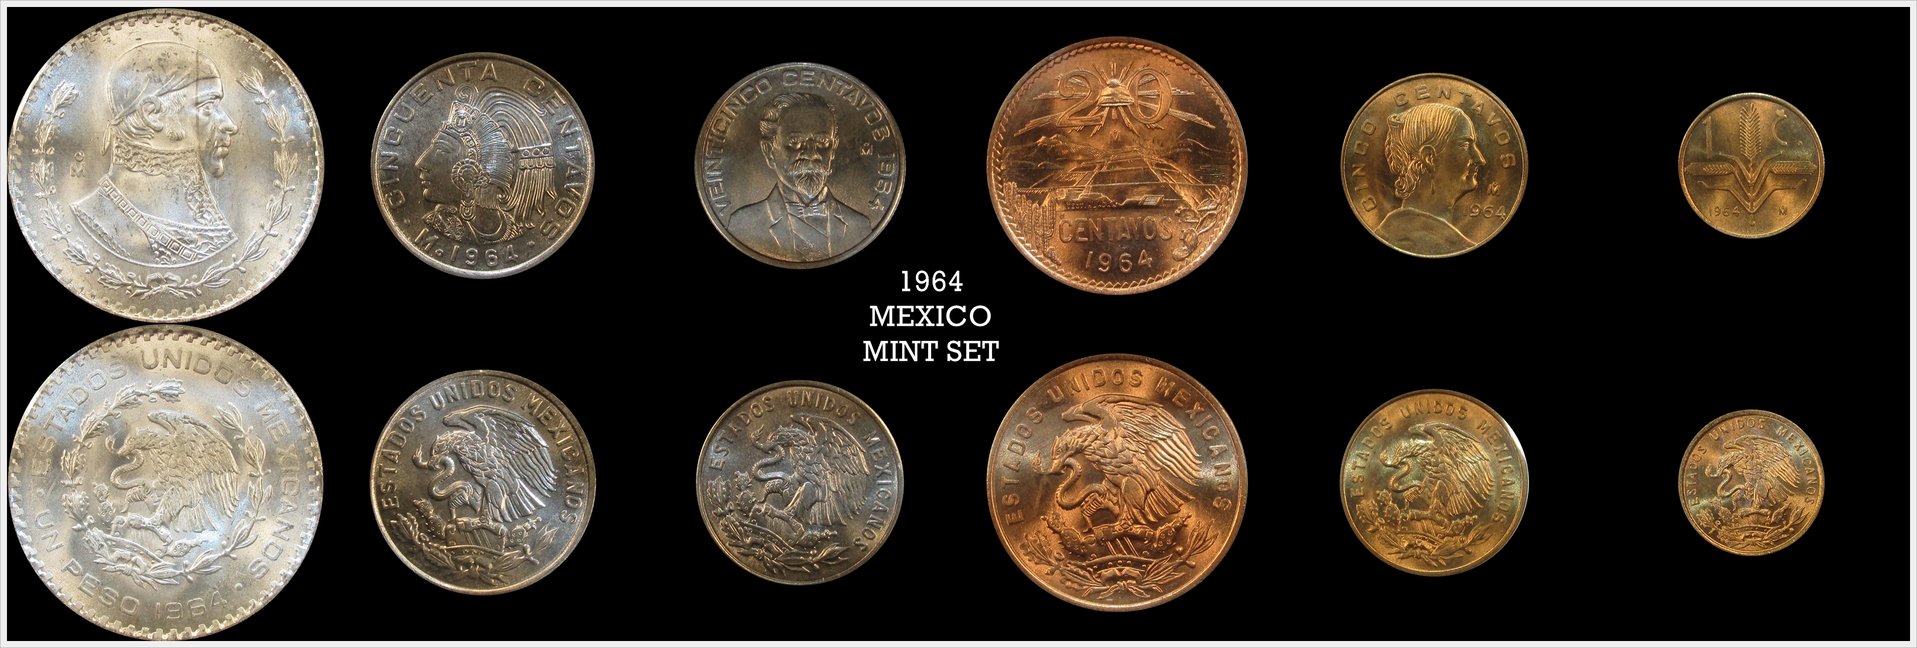 Mexico 1964 Mint Set.jpg